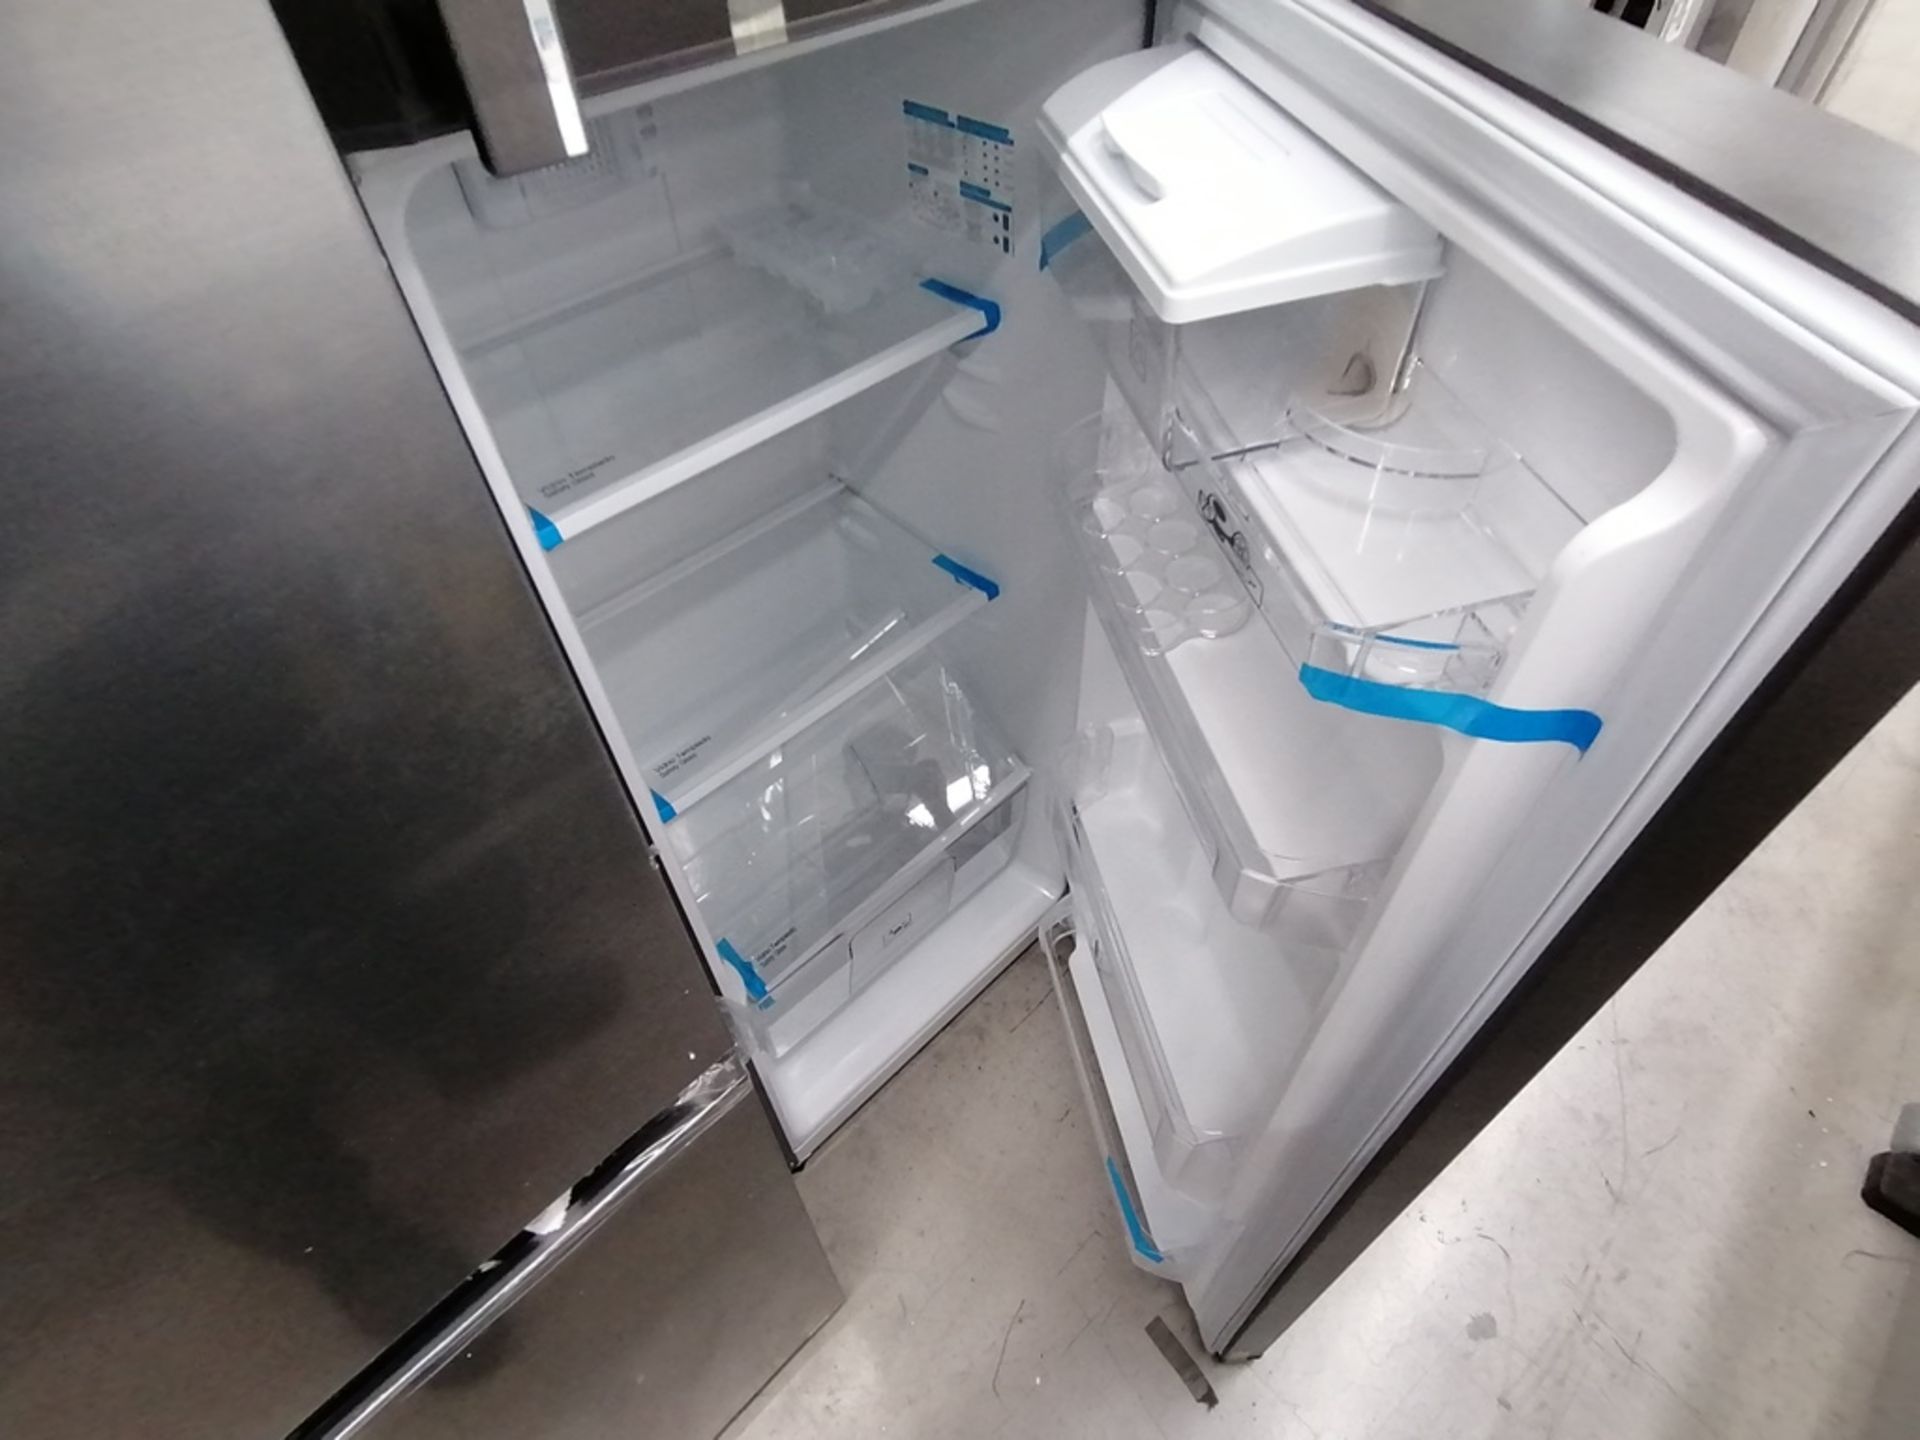 Lote de 2 refrigeradores incluye: 1 Refrigerador con dispensador de agua, Marca Mabe, Modelo RMA300 - Image 12 of 15